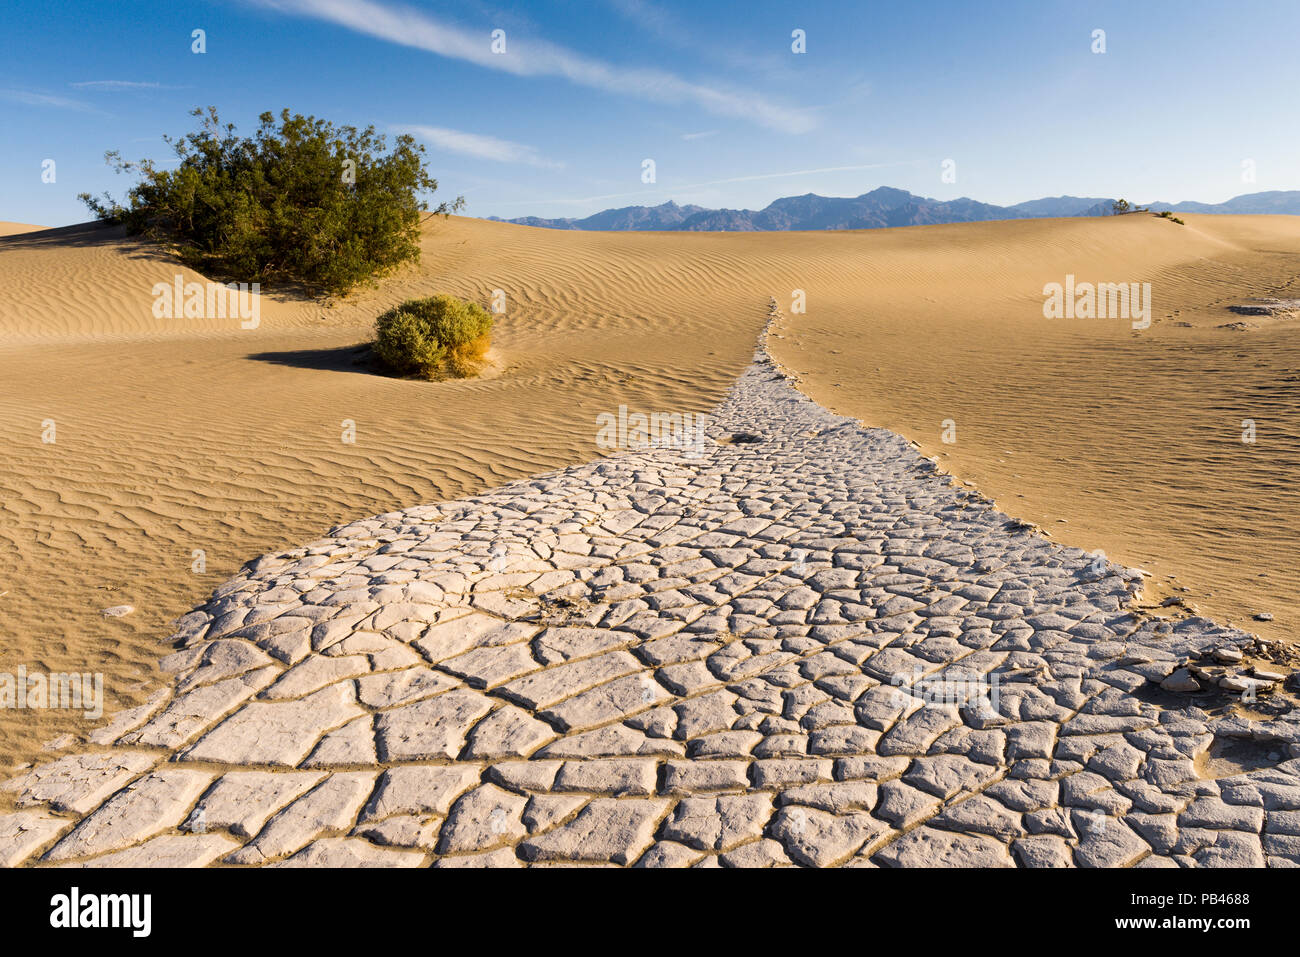 El Mesquite dunas de arena en el Parque Nacional Valle de la muerte en condiciones prístinas en la mañana después de una tormenta de viento frecuente. Foto de stock